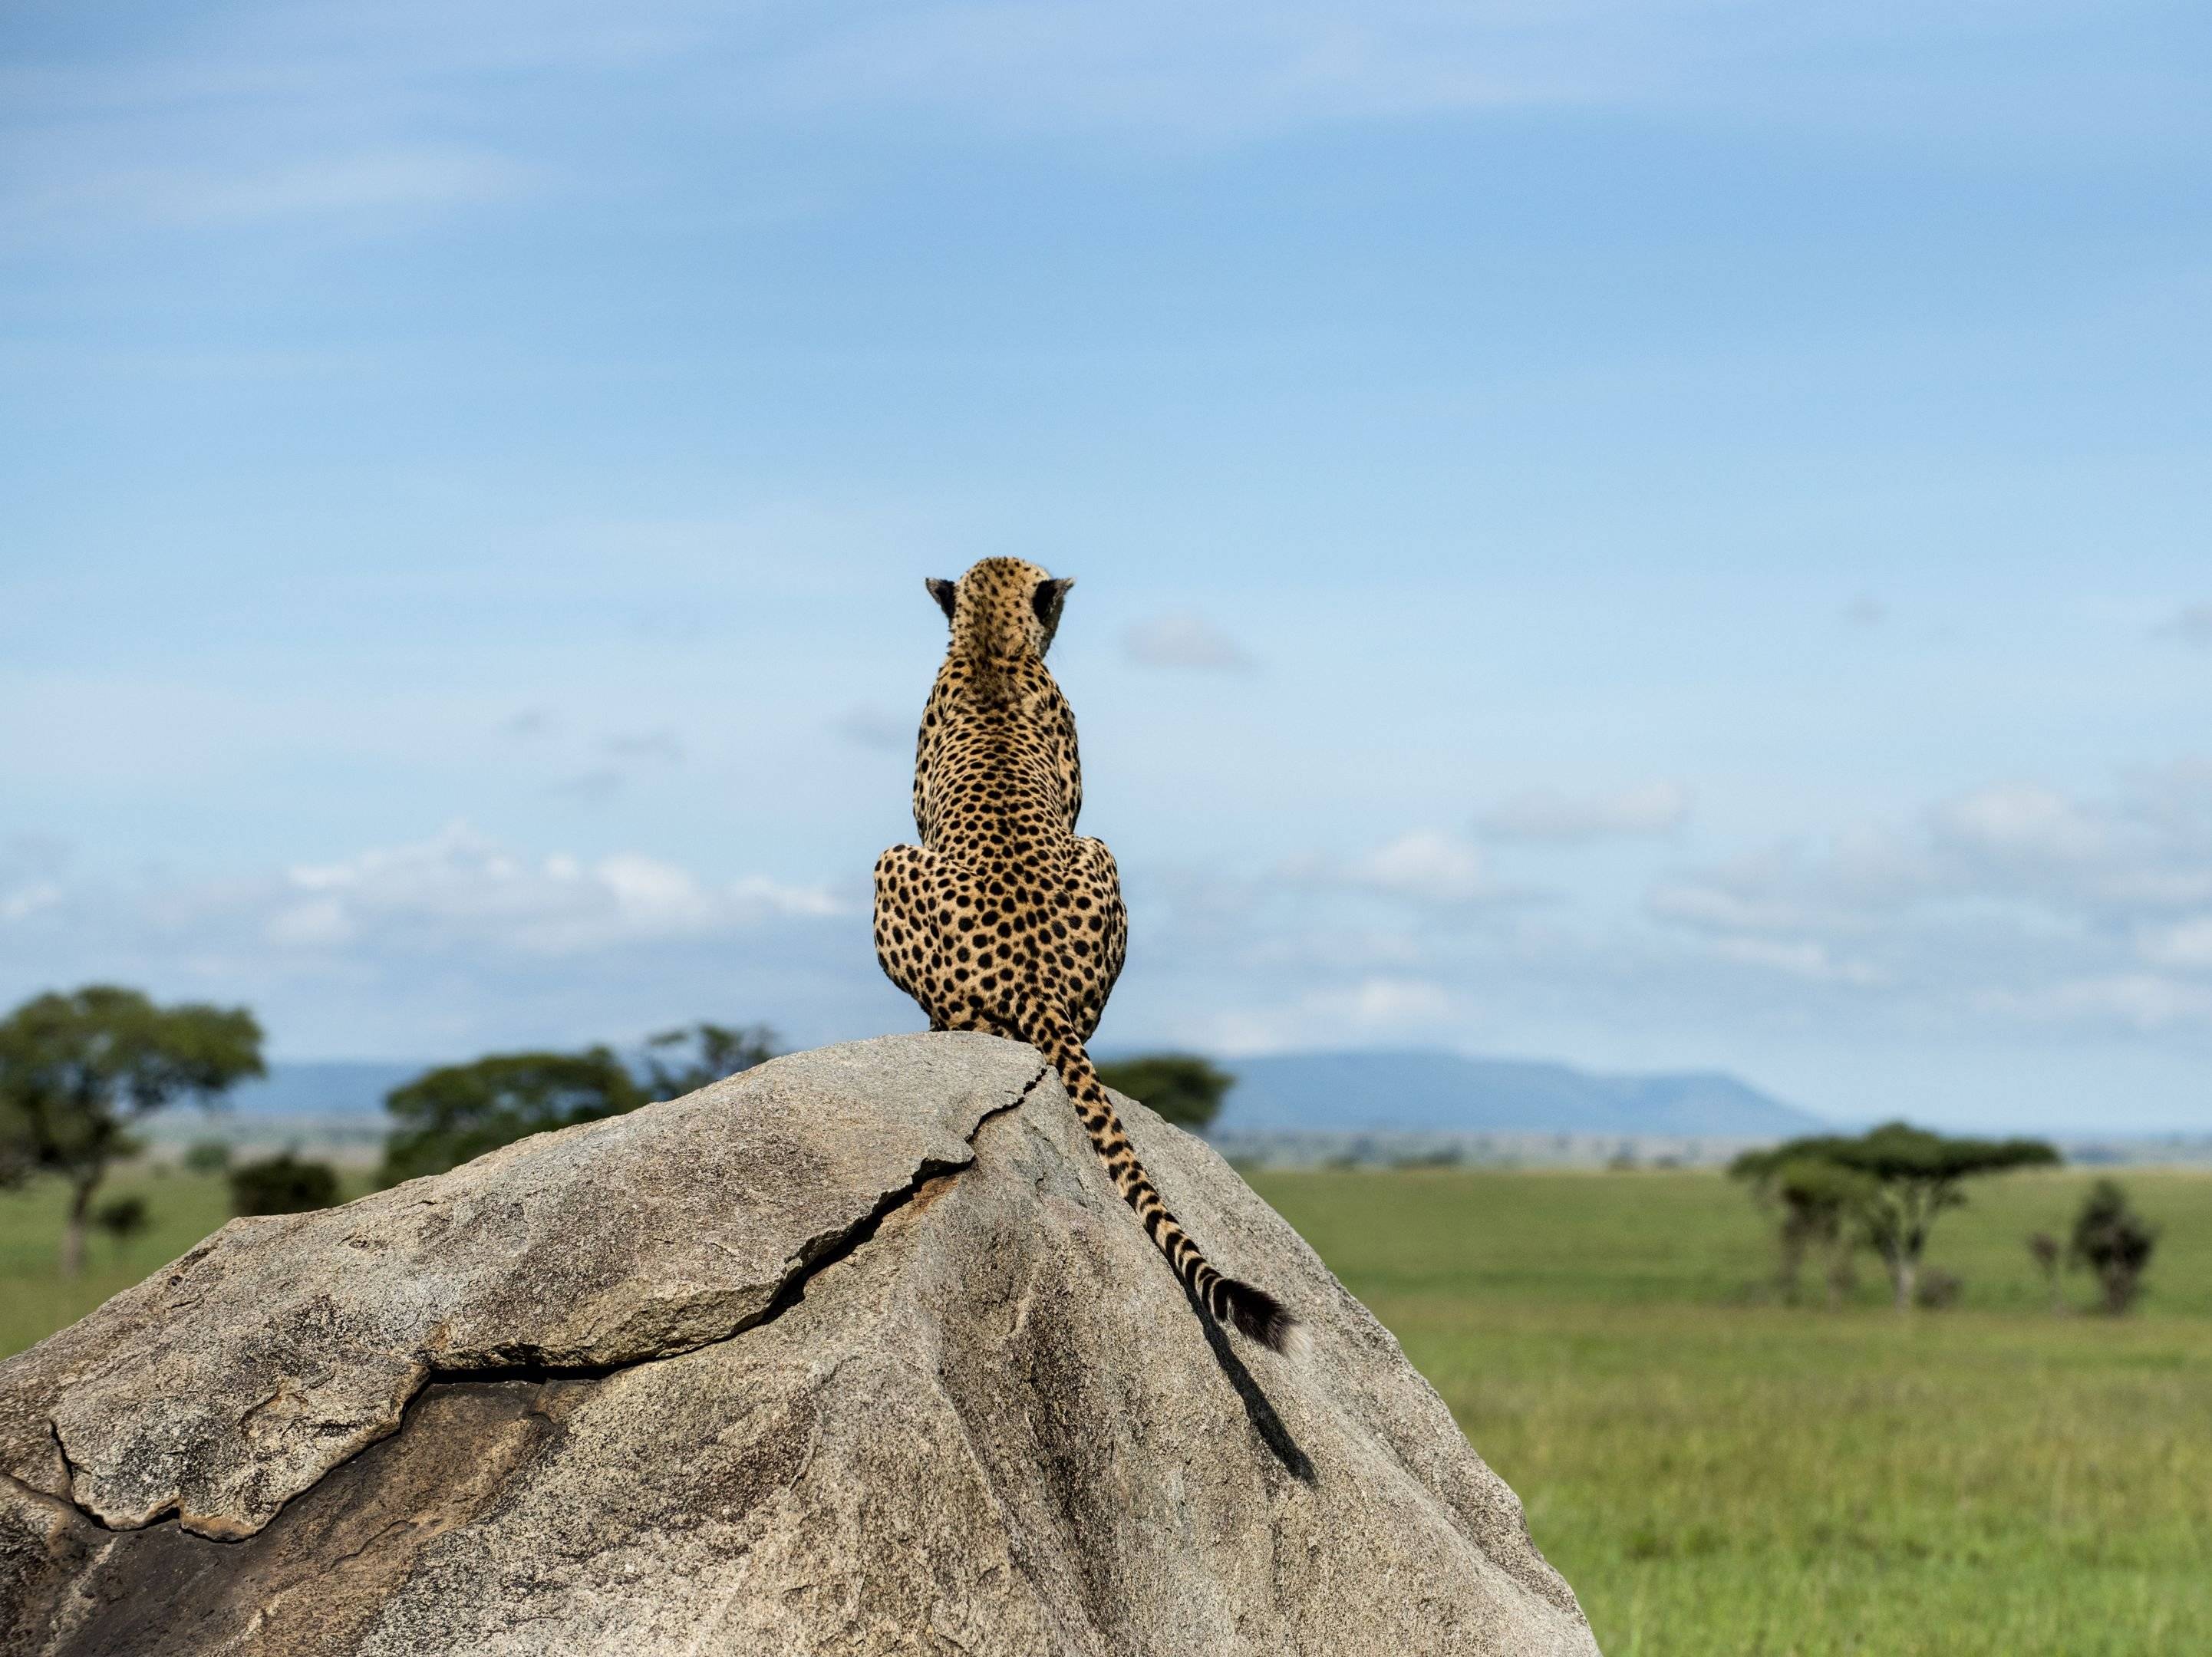 Parco nazionale Serengeti e trasferimento a Mto Wa Mbu